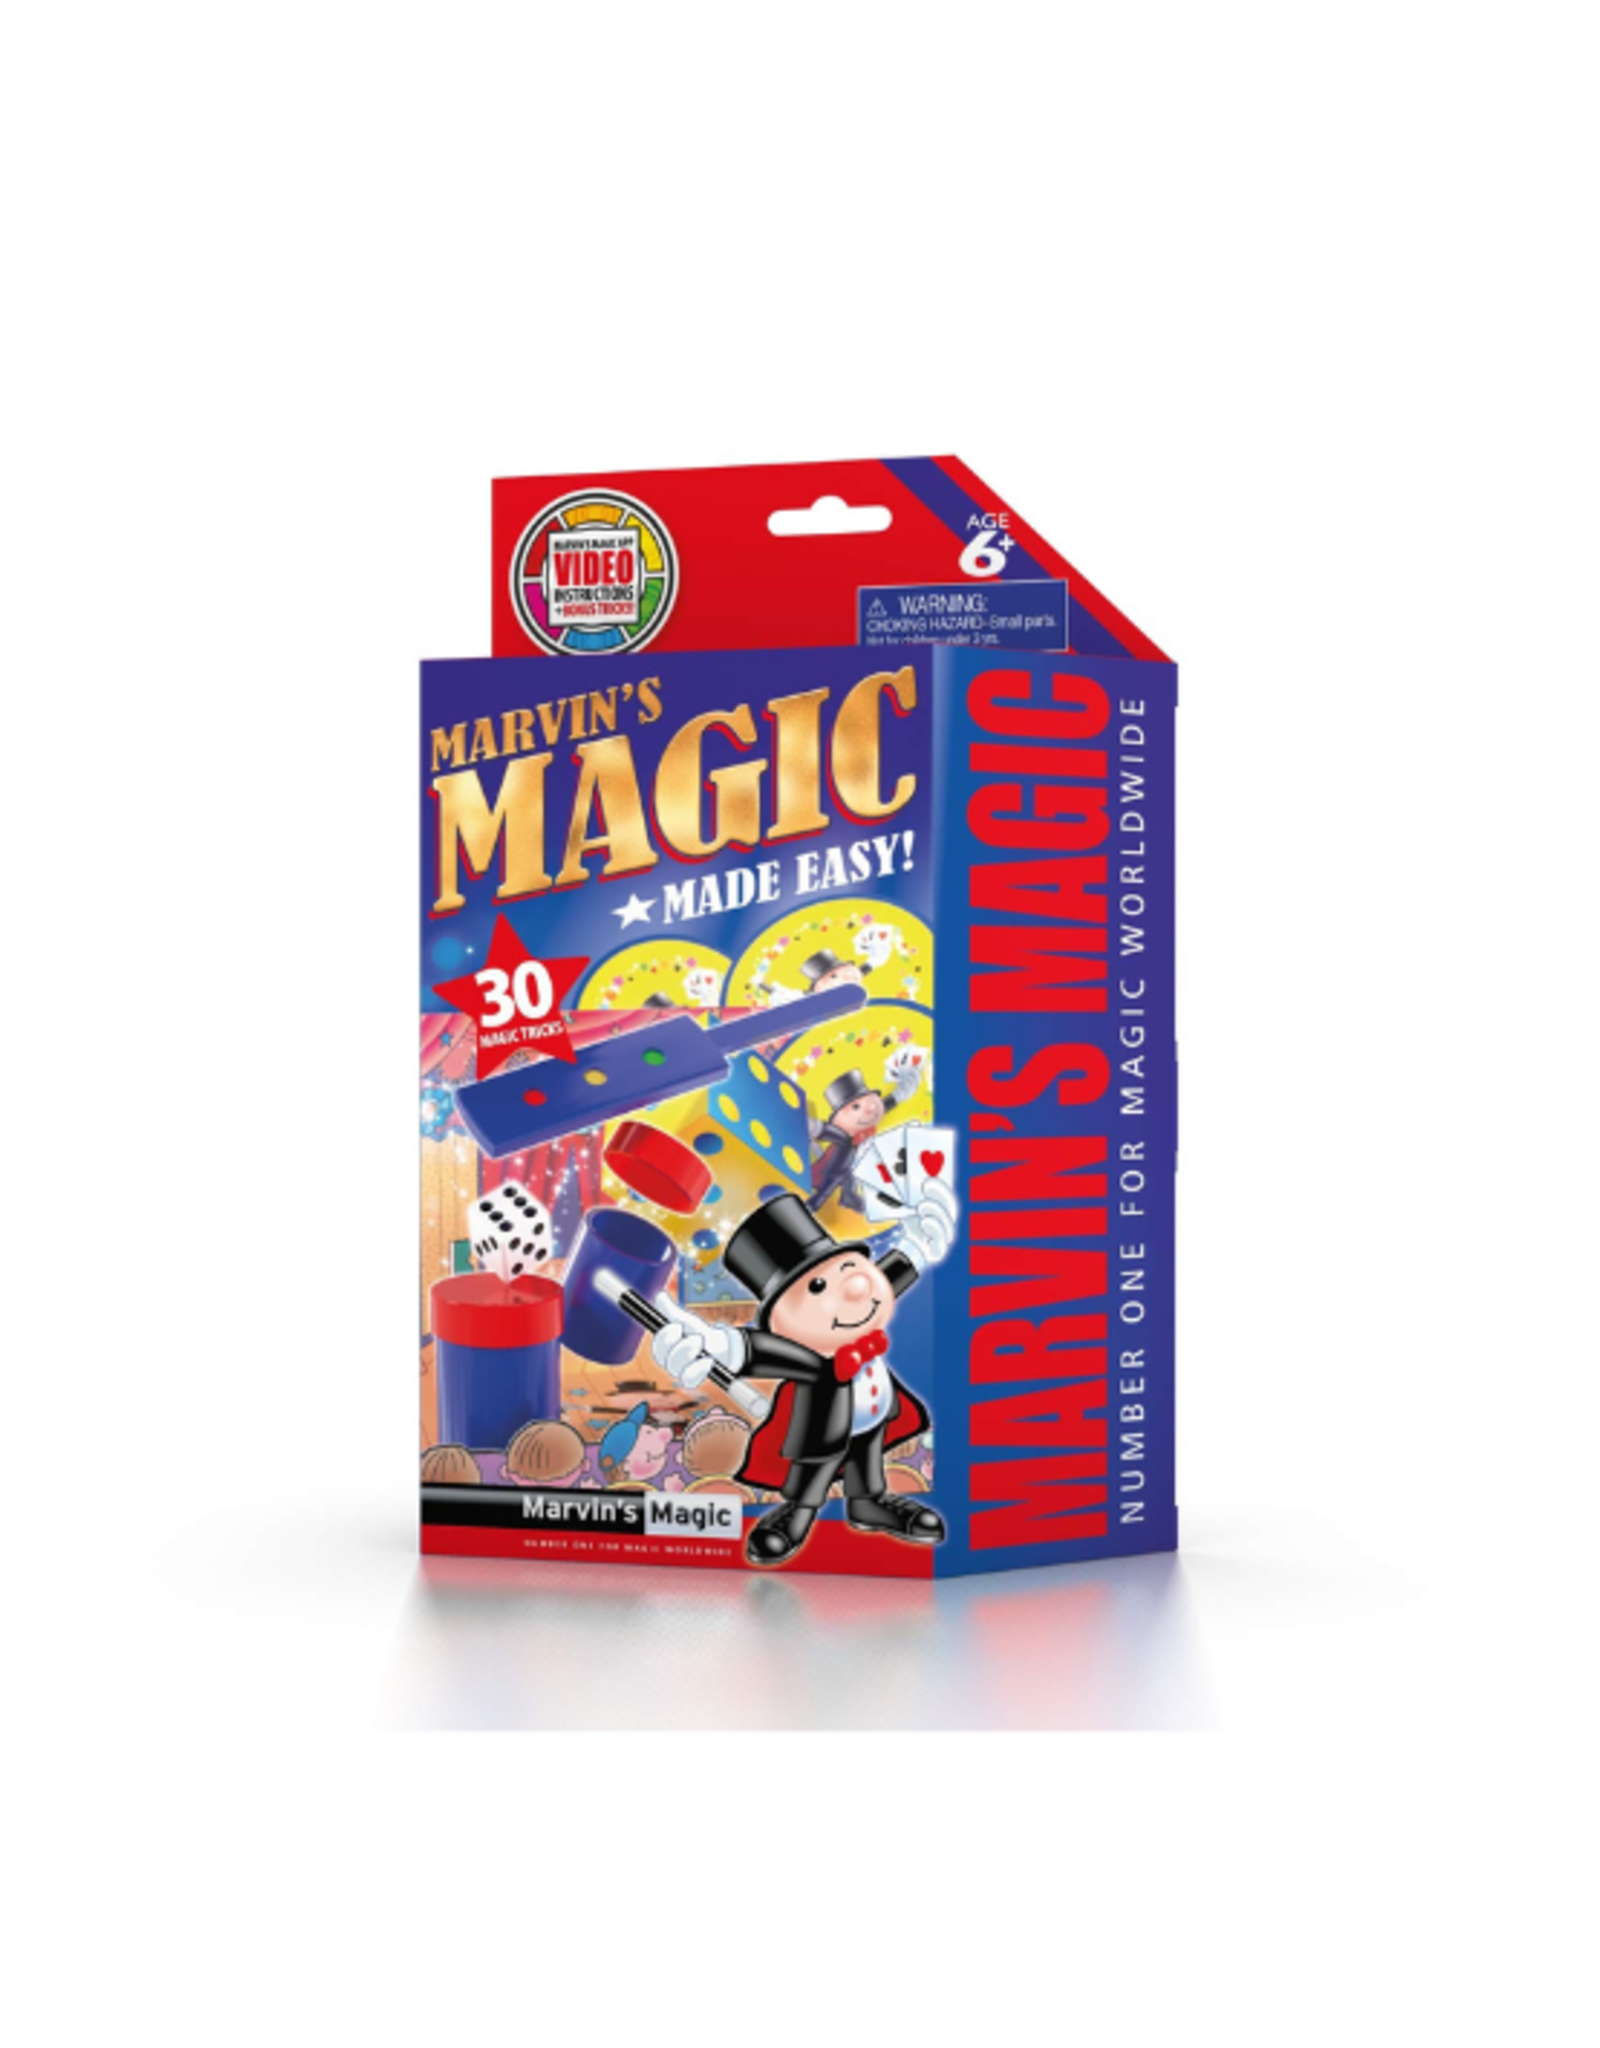 Marvin's Magic Marvin's Magic - Magic Made Easy! (Red)